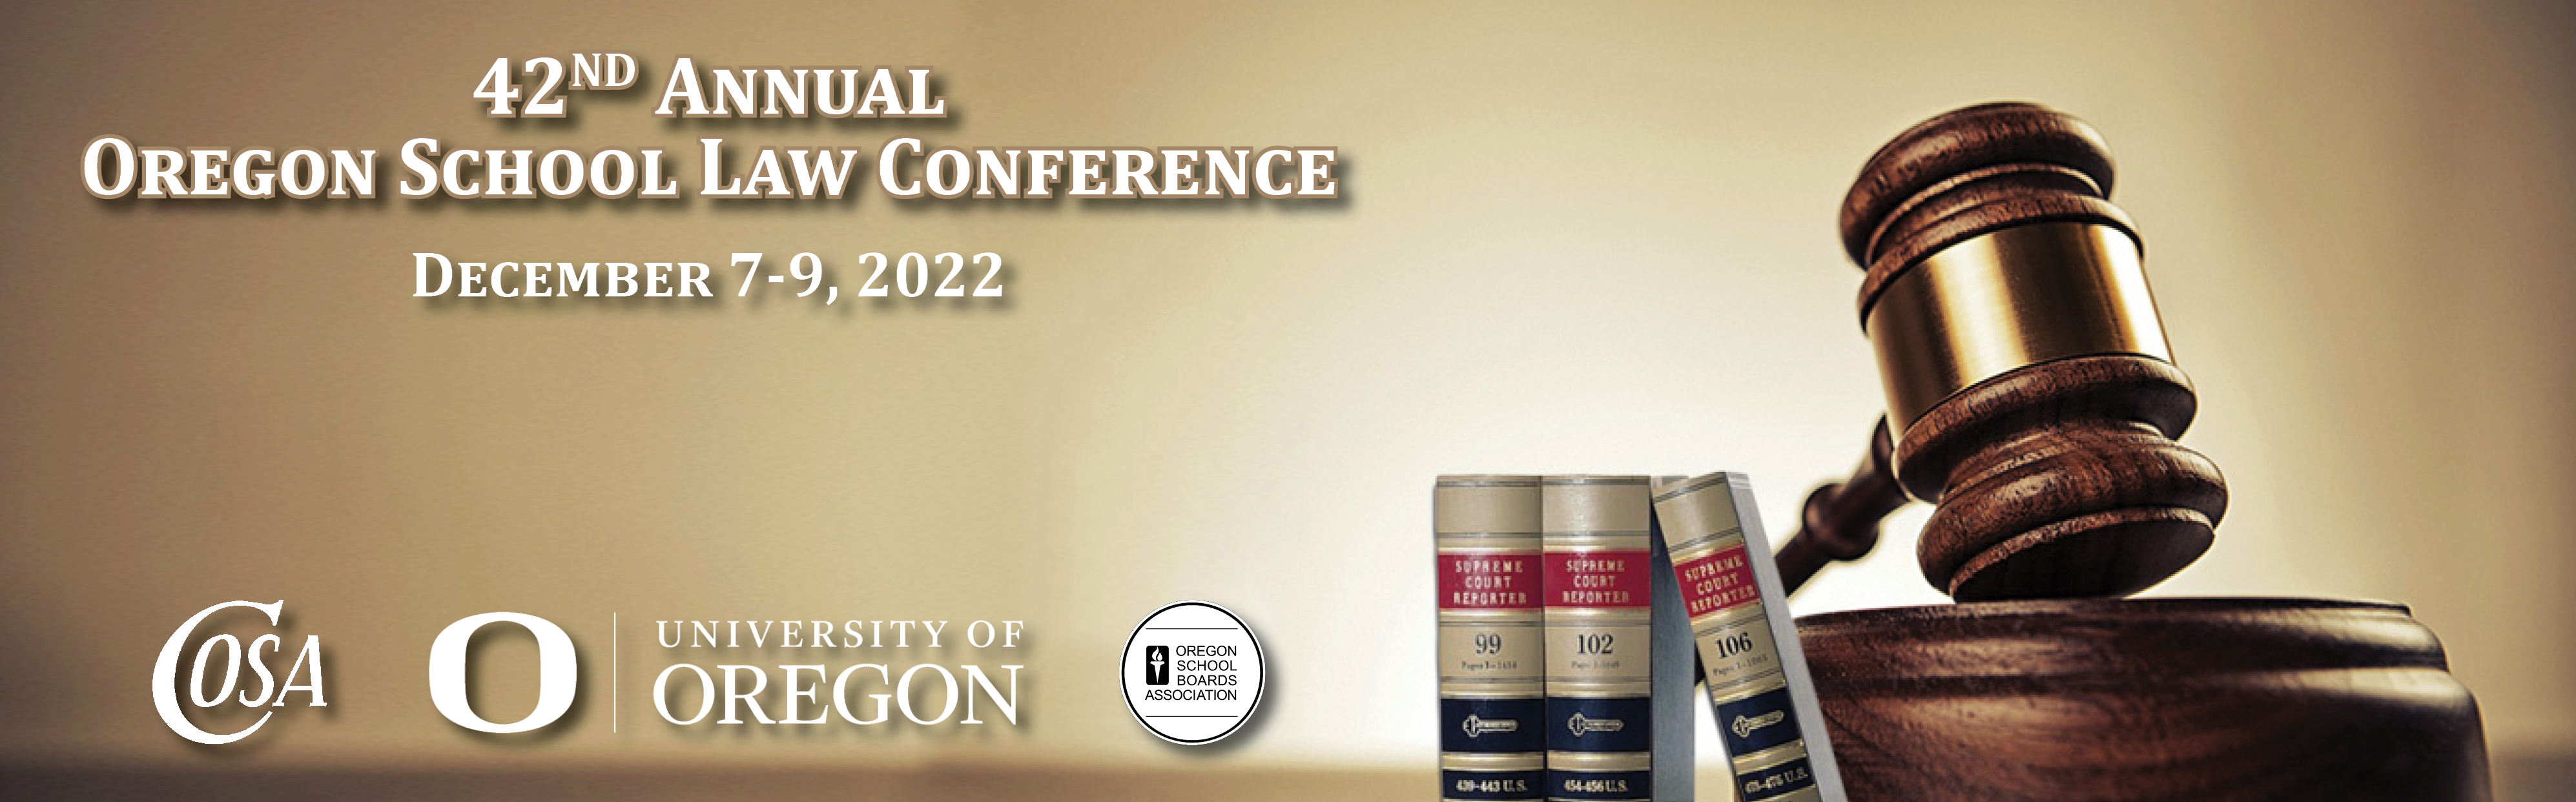 2022 Oregon School Law Conference Coalition of Oregon School